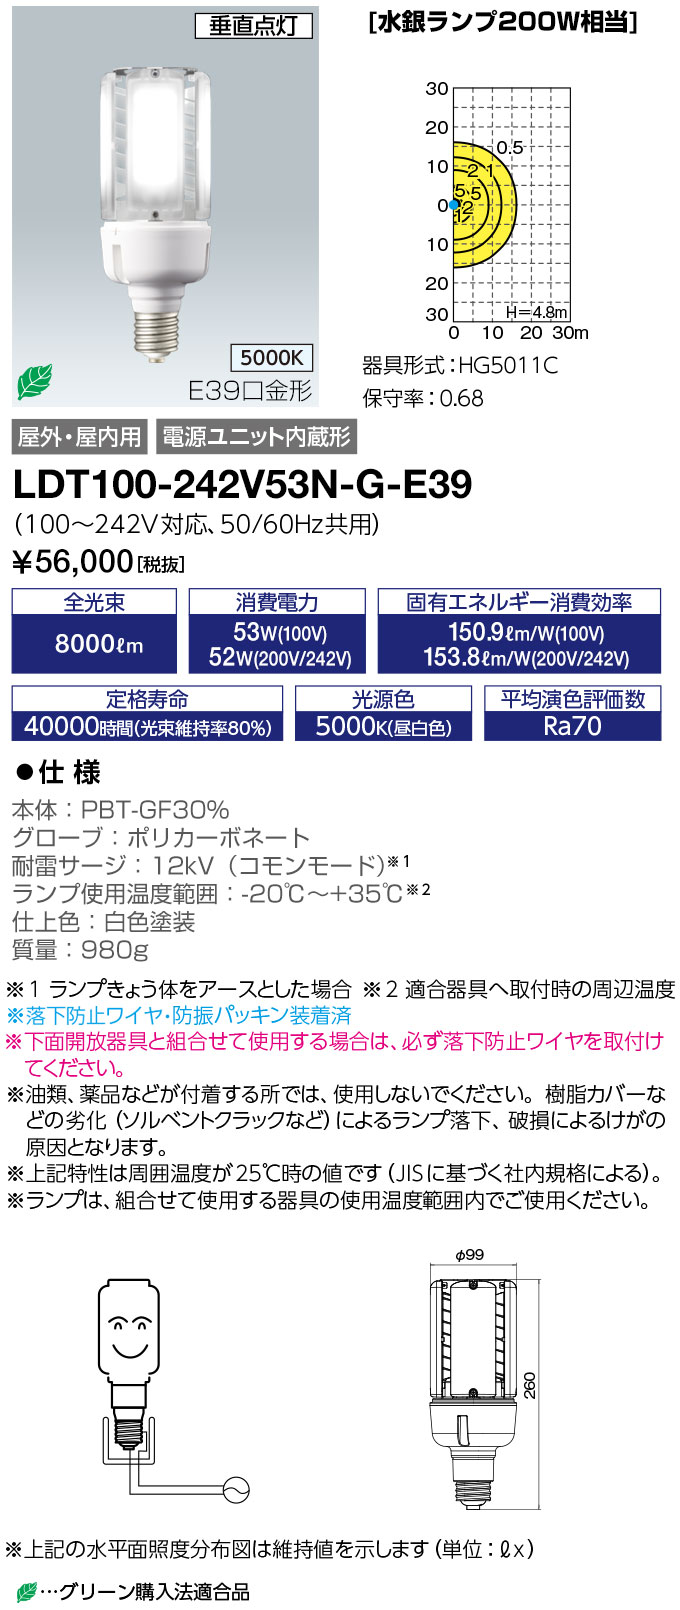 LDT100-242V53N-G-E39